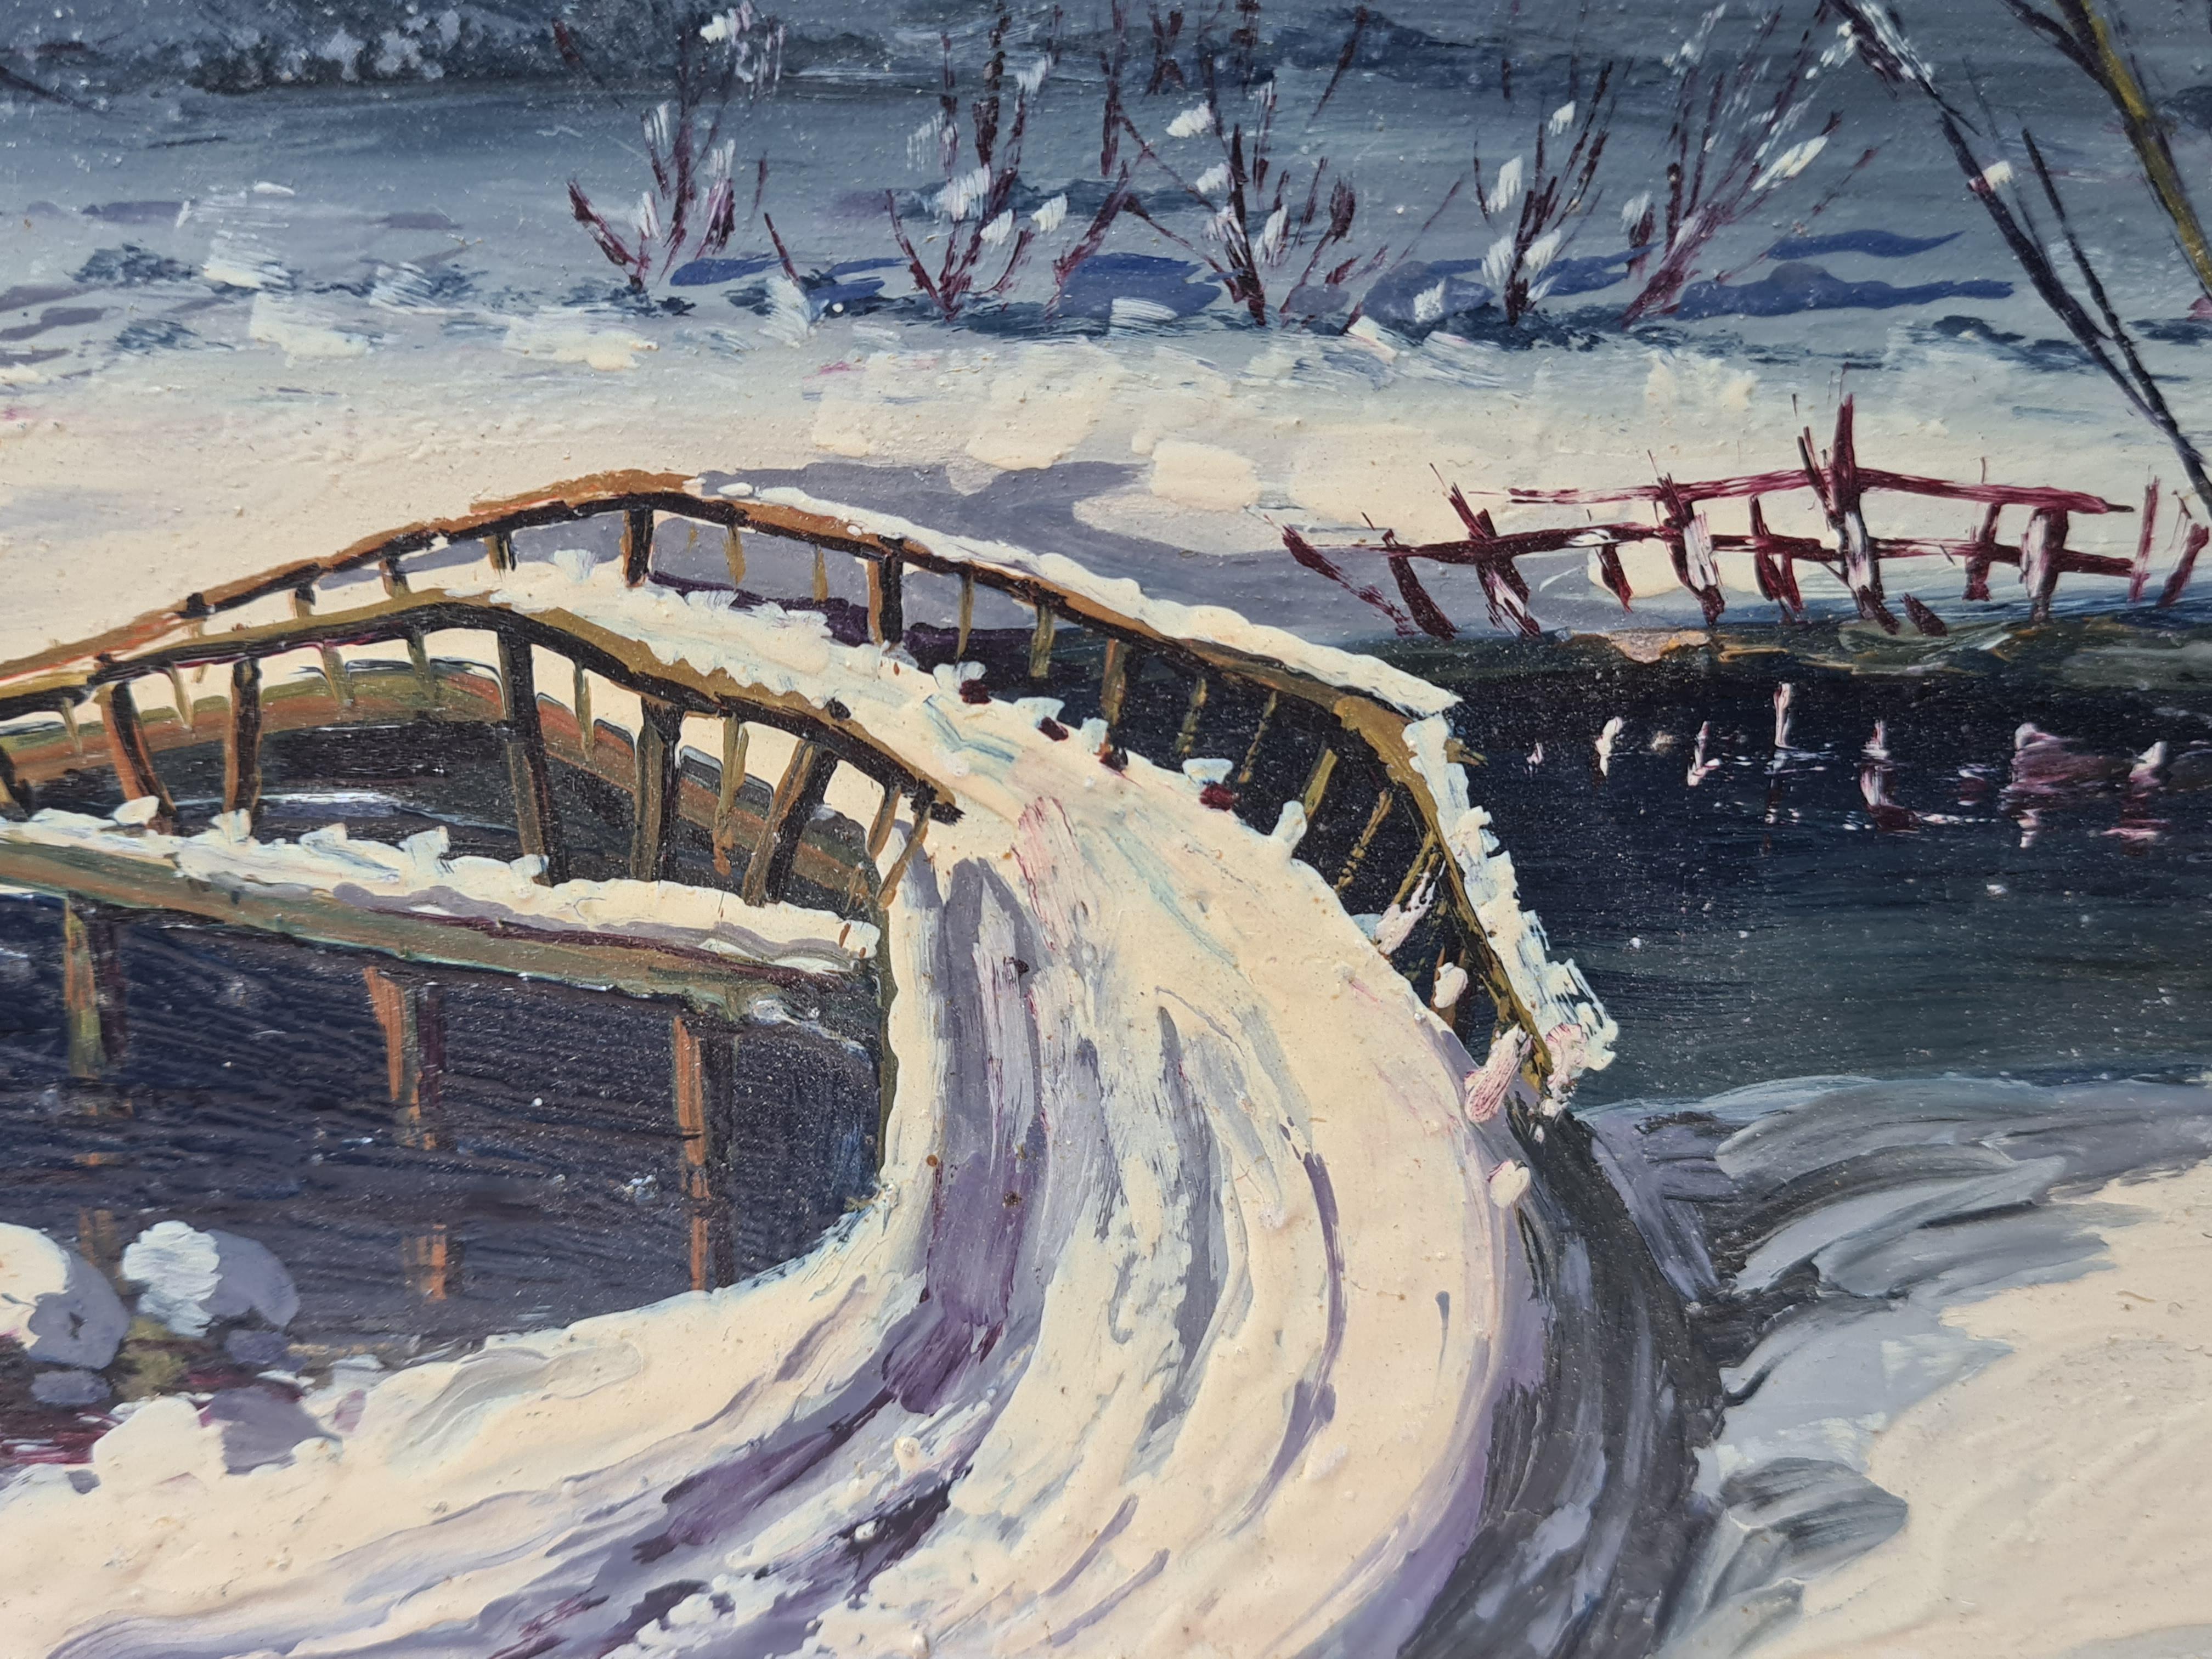 Merveilleur d'hiver de Noël, paysage de neige de l'école de Barbizon. - École de Barbizon Painting par Boggio